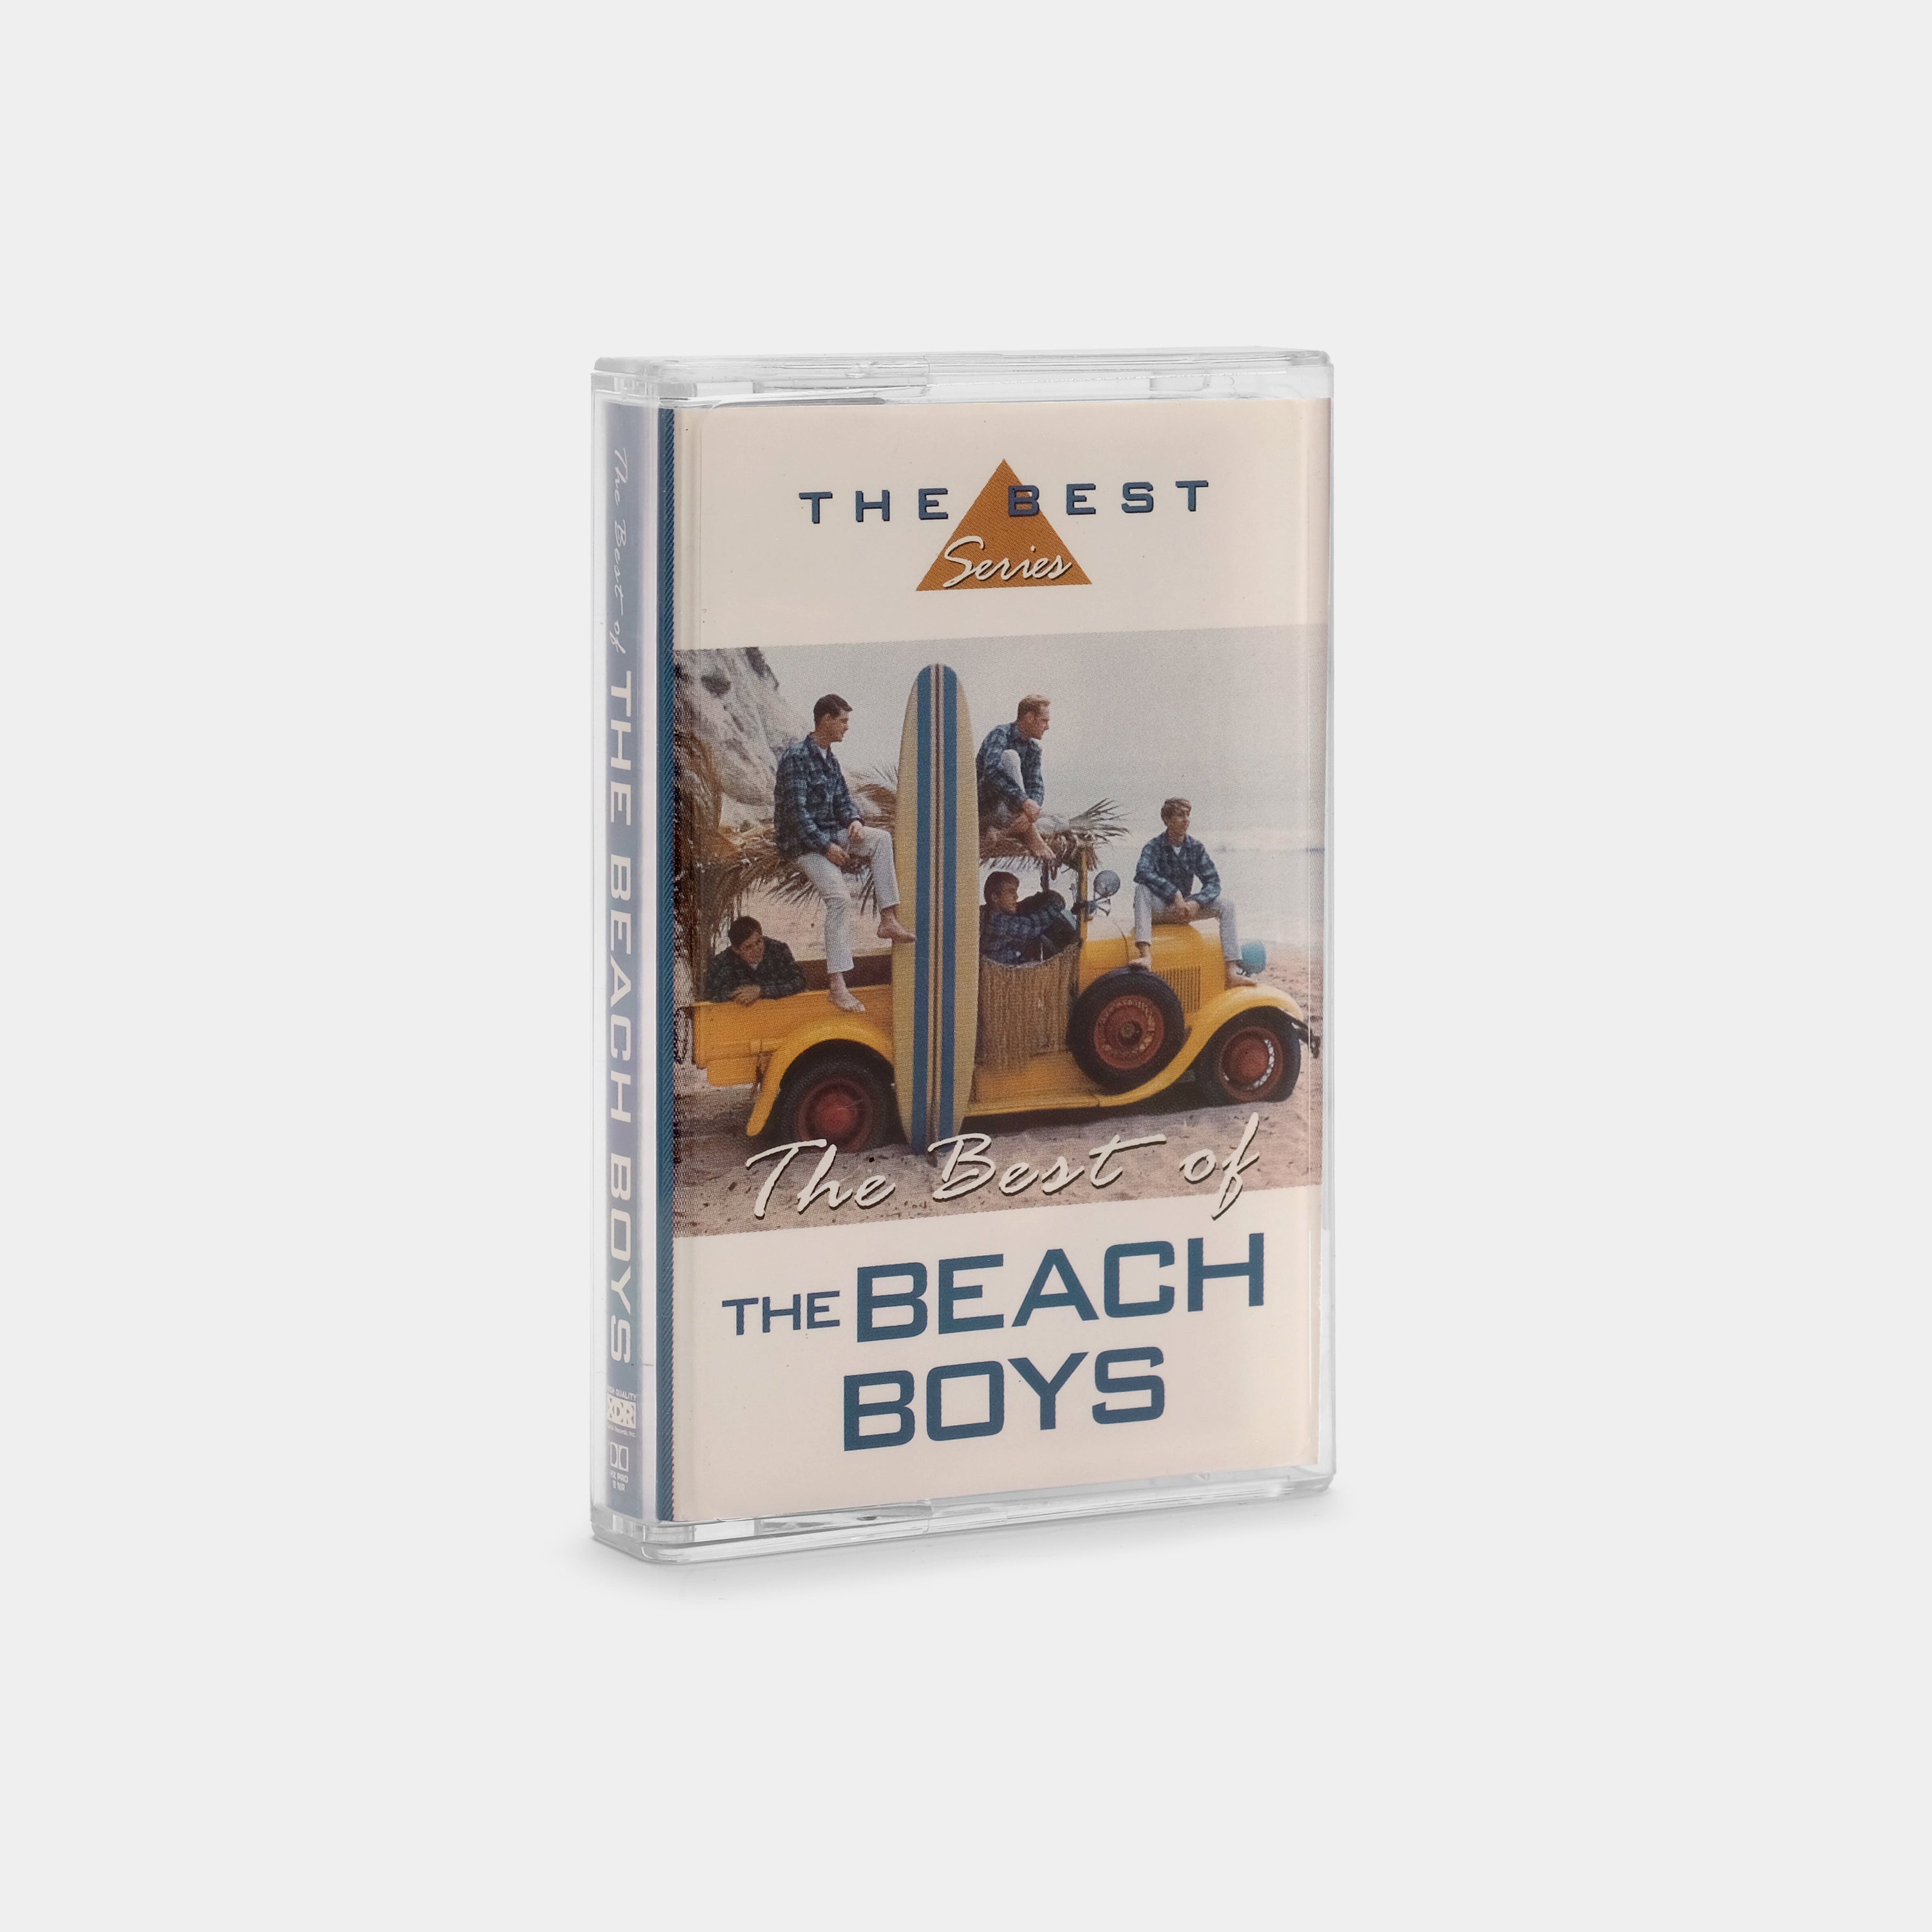 The Beach Boys - The Best Of The Beach Boys Cassette Tape